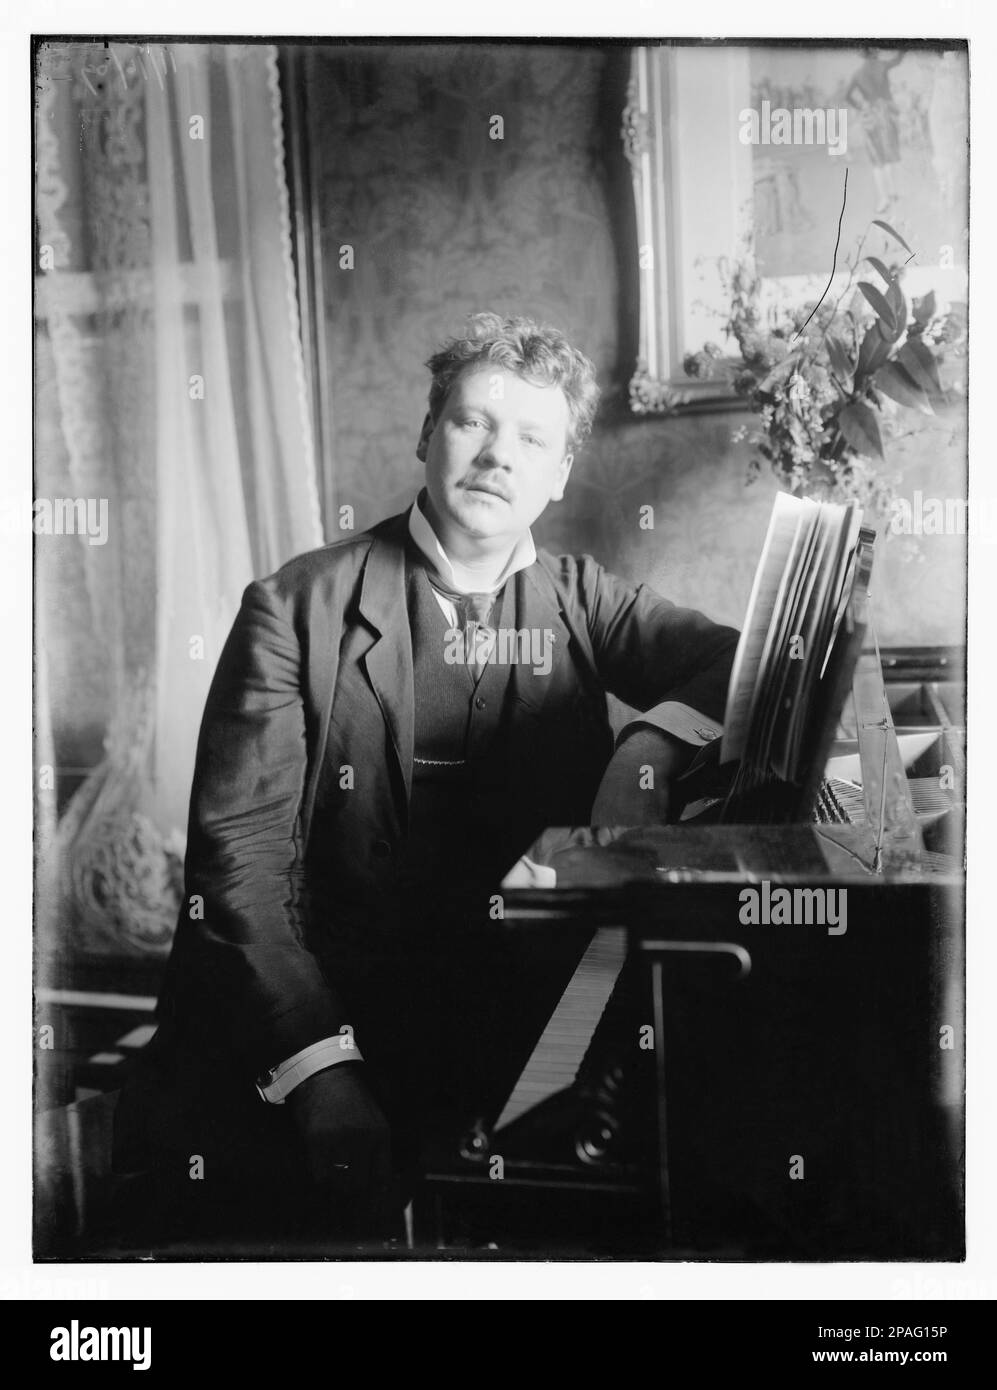 1909 , 16 . november , New York , USA : der österreichisch-tschechische Opernsänger Tenore LEO SLEZAK ( 1873 - 1946 ) . Ab 1901 war er ständiges Mitglied des Ensembles der Wiener Oper und begann eine riesige weltweite Karriere. 1909 schloss er einen 3-Jahres-Vertrag an der Metropolitan Opera in New York City ab. Dort hatte er großen Erfolg als Sänger von Wagner und Verdi. Er war der berühmteste Otello seiner Zeit und spielte die Rolle in der Metropolitan Opera mit Arturo Toscanini Dirigent. 1932 begann Slezak, im deutschen Kino zu spielen. Dort spielte er humorvolle Rollen, aber meistens sang er. Ein paar von diesen Mo Stockfoto